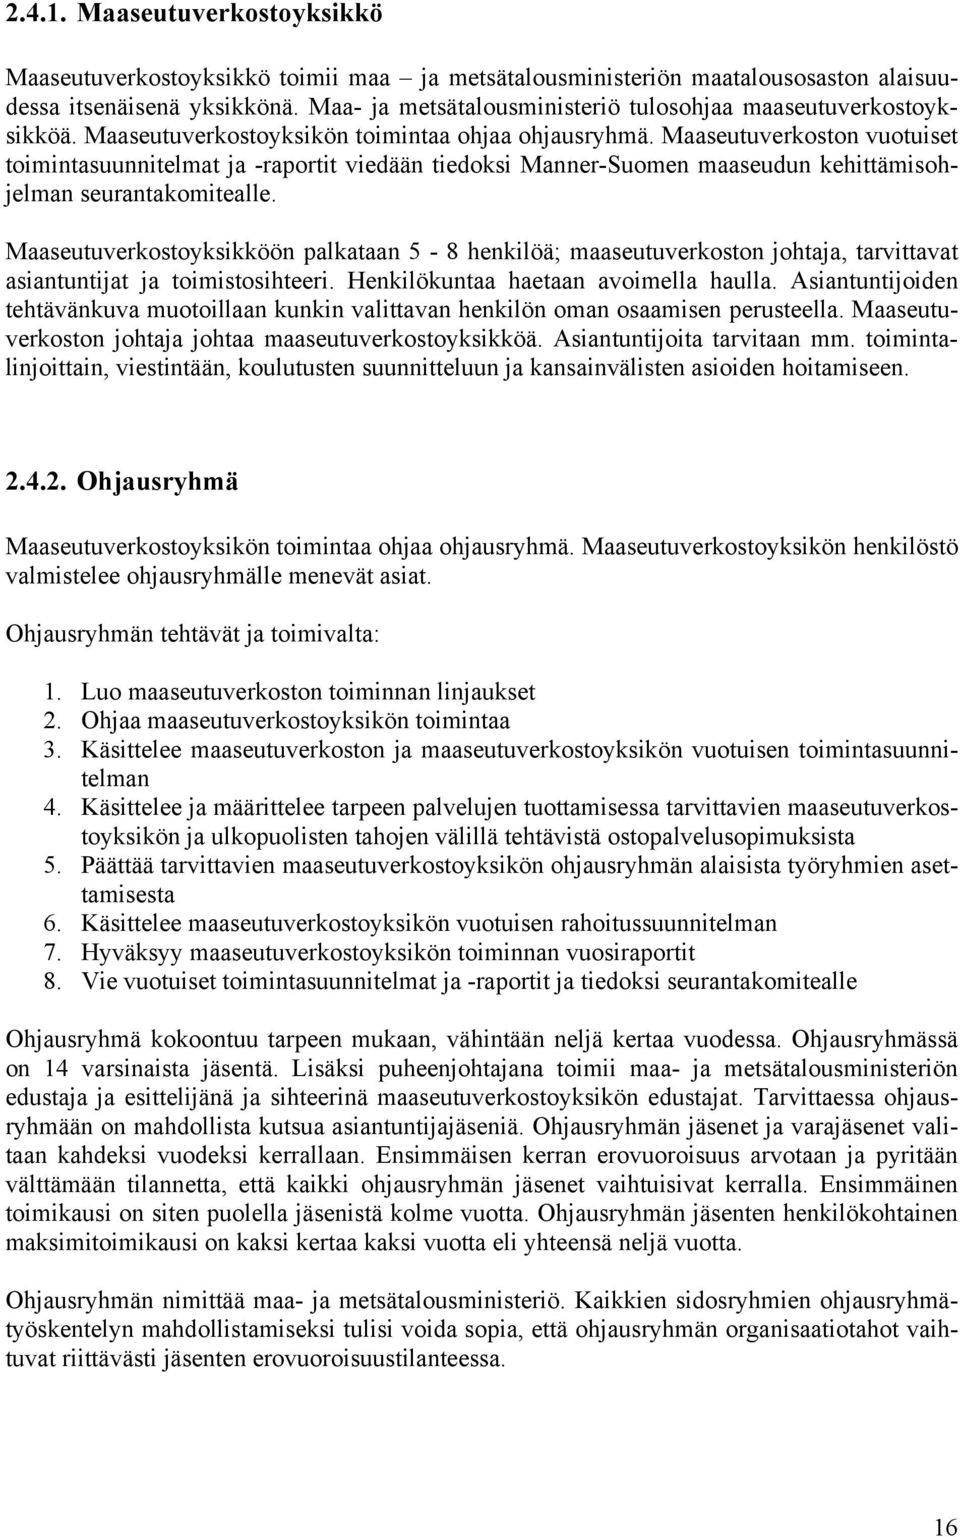 Maaseutuverkoston vuotuiset toimintasuunnitelmat ja -raportit viedään tiedoksi Manner-Suomen maaseudun kehittämisohjelman seurantakomitealle.